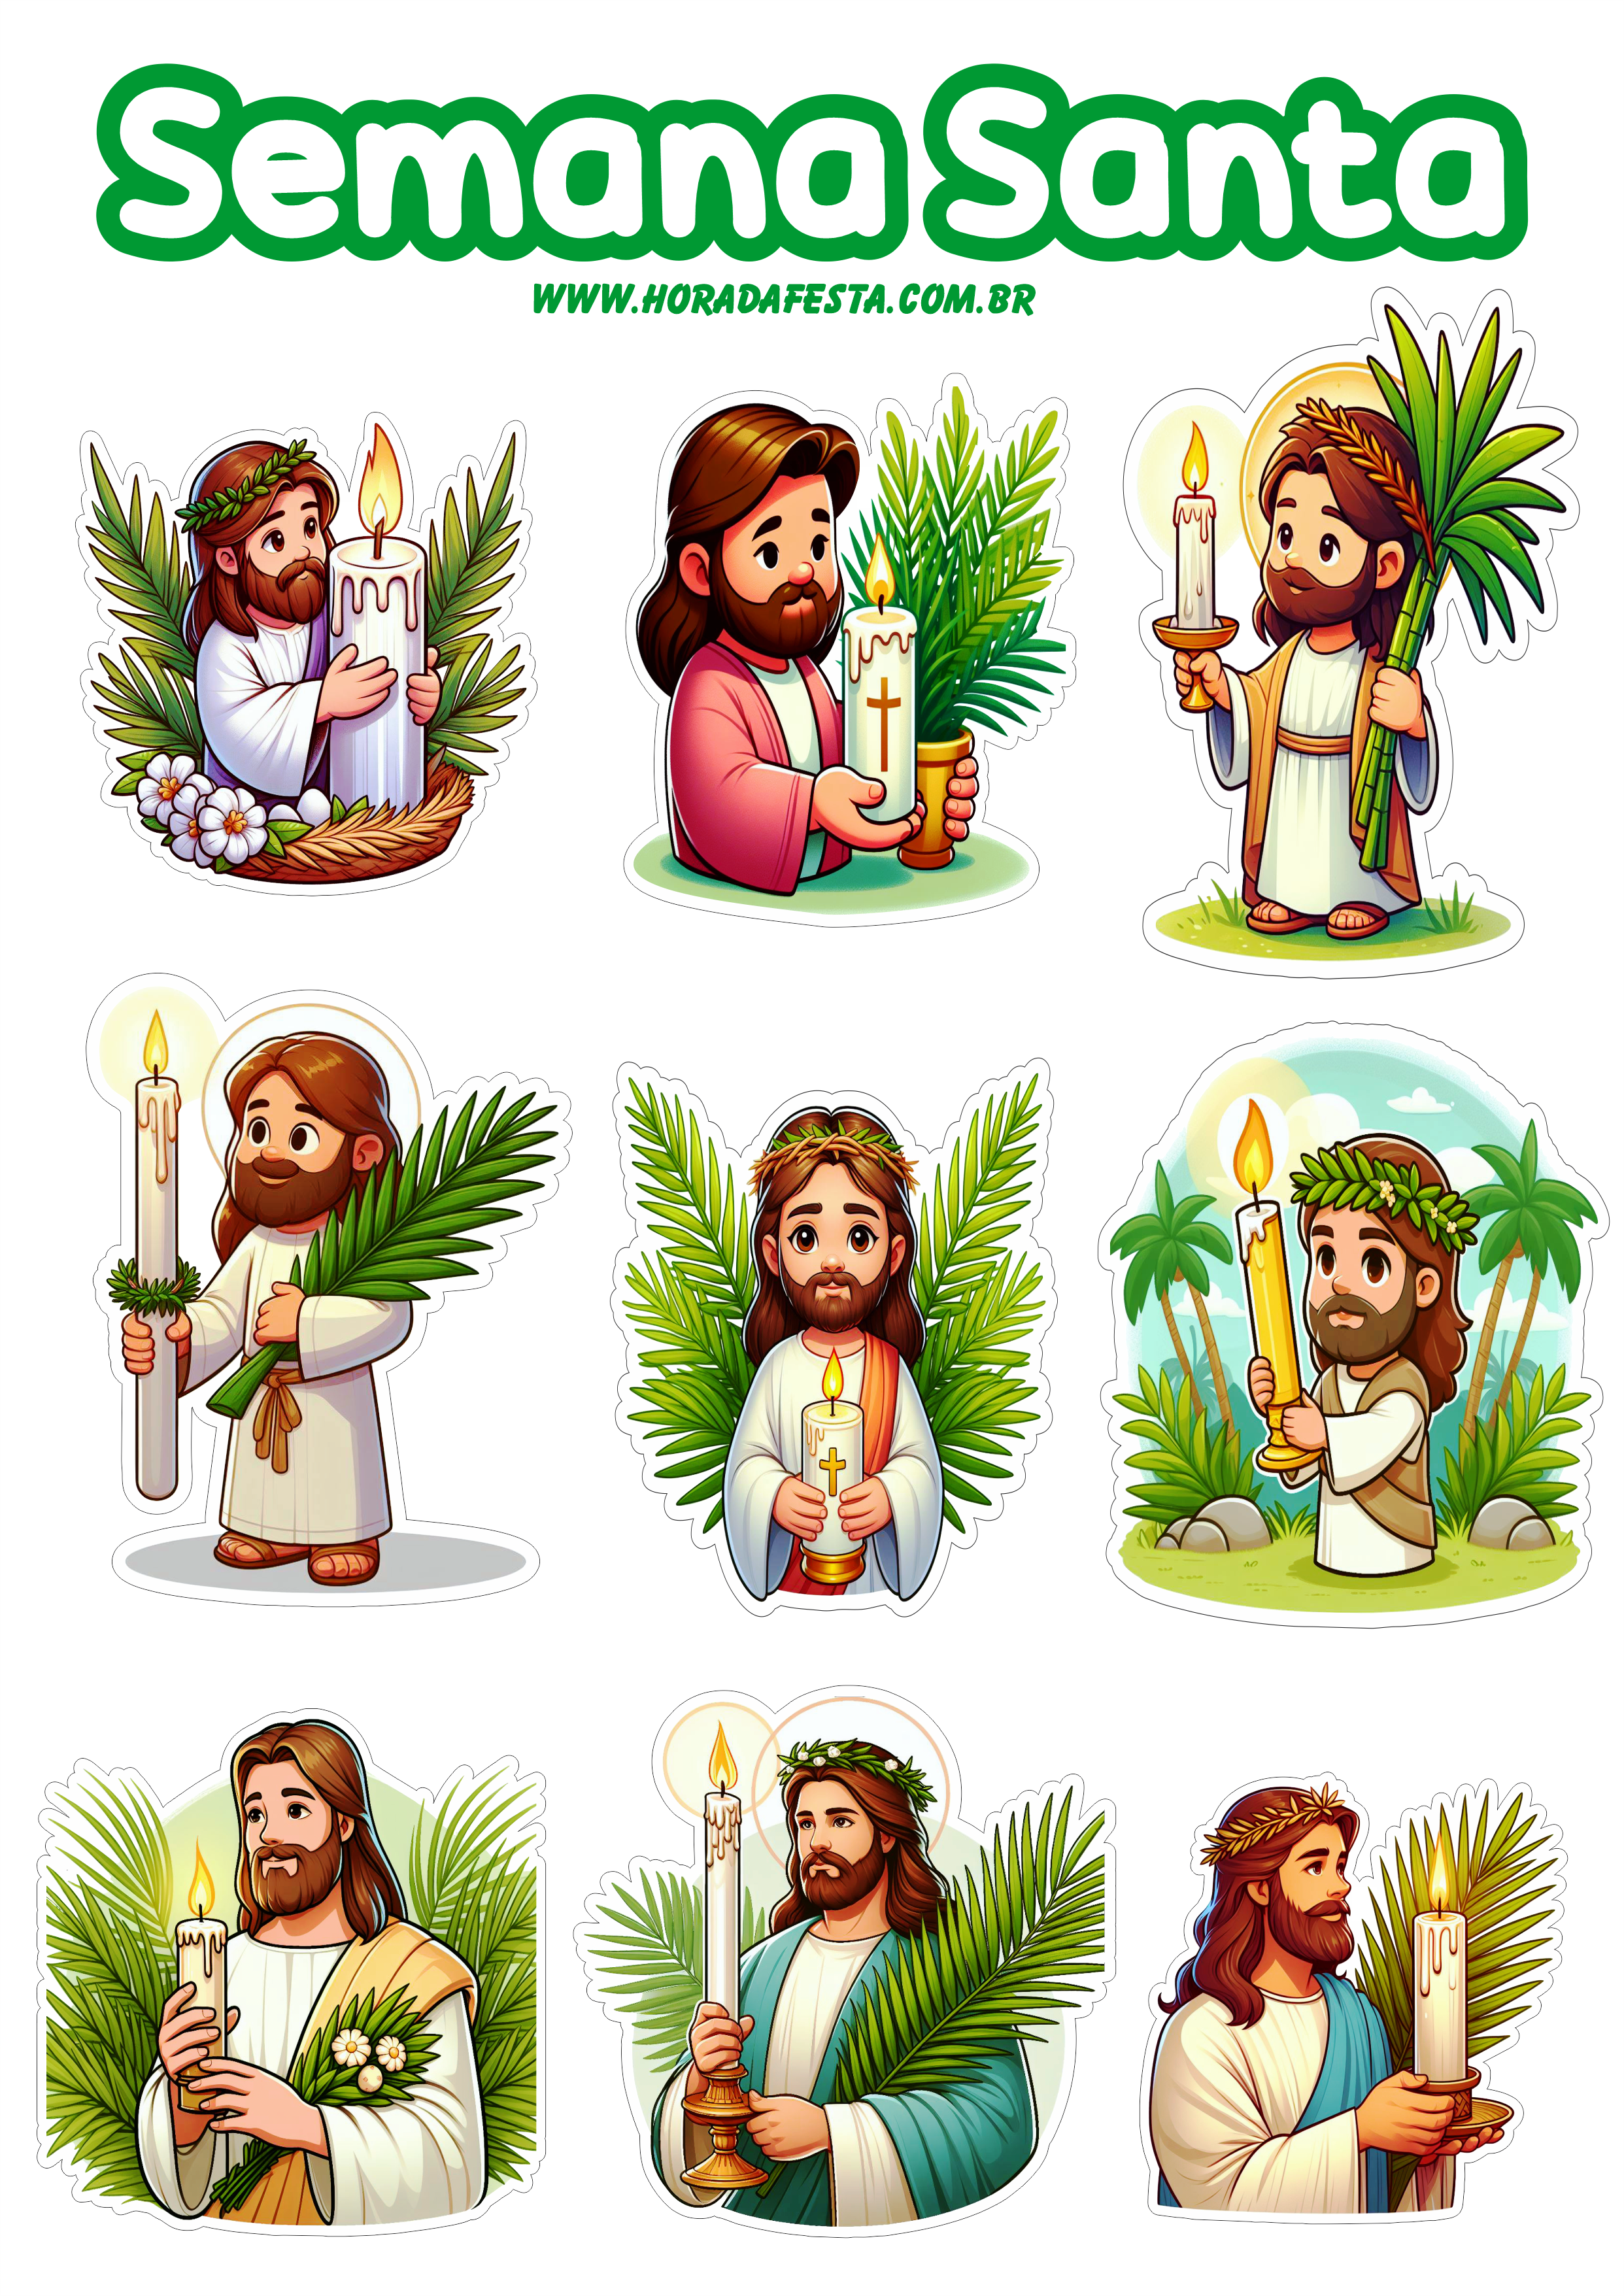 Semana Santa Imagens de Jesus Cristo adesivos ressurreição quaresma png